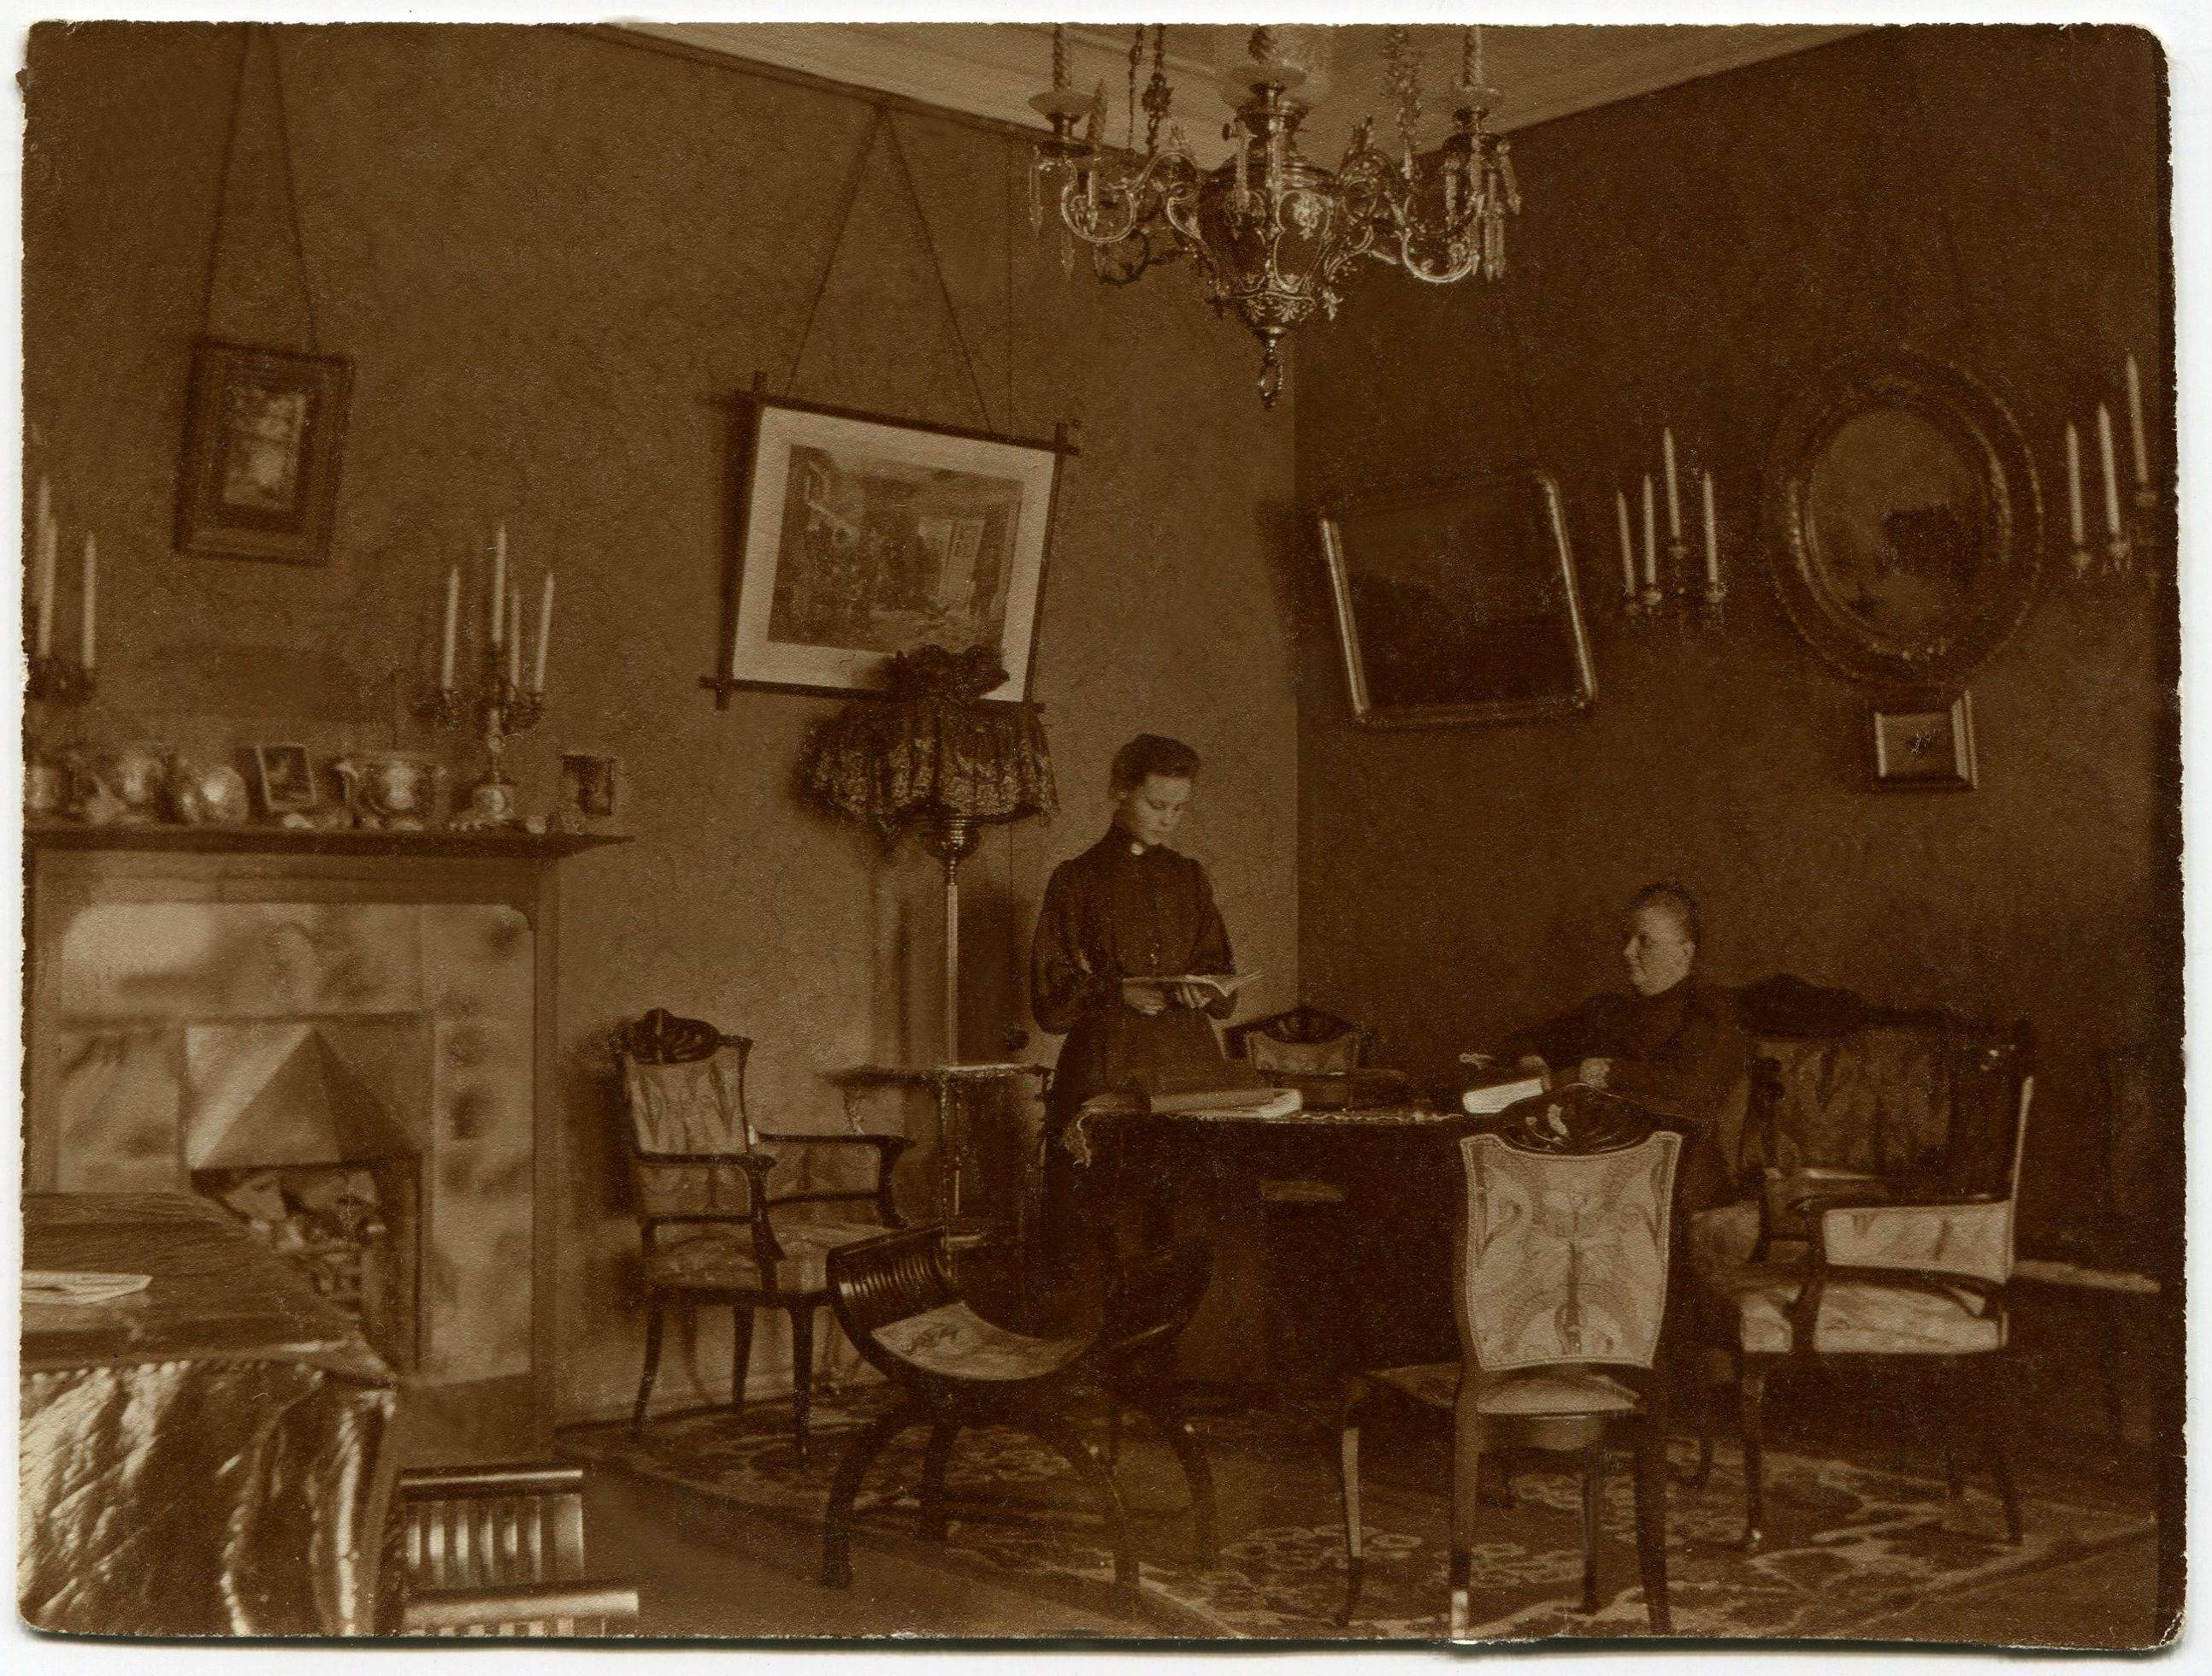 Квартира Вайтенсов на Вознесенском пр.Юля и Кл. Пр. 1902 - копия.jpg